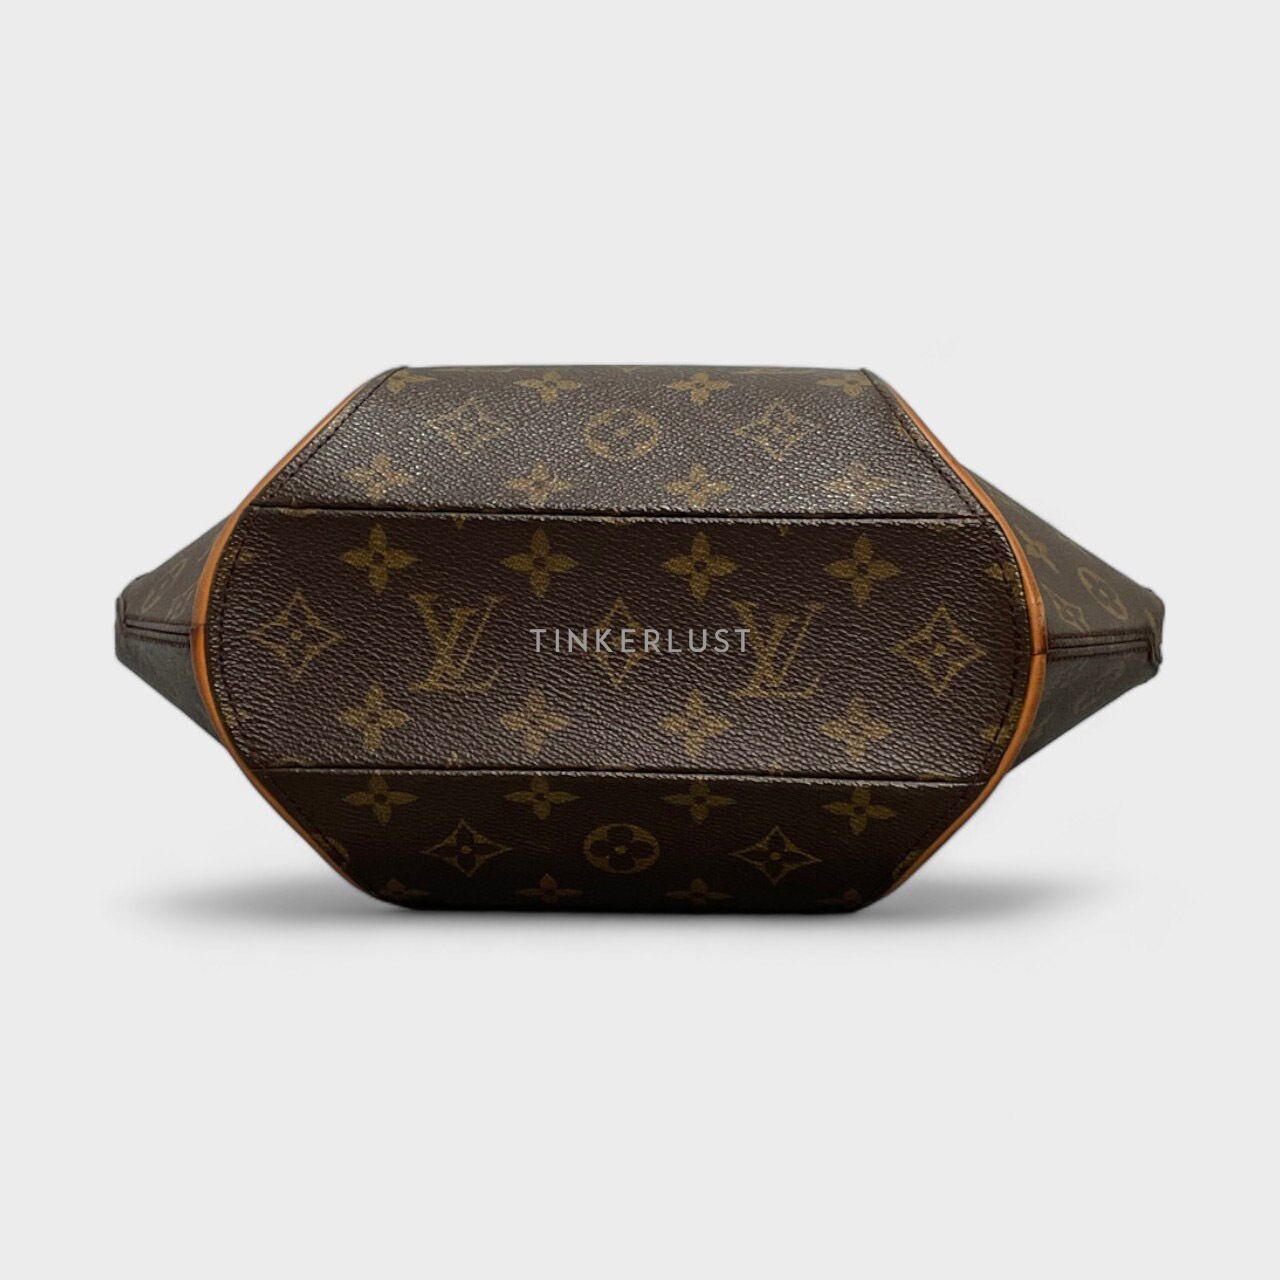 Louis Vuitton Monogram Ellipse PM Brown GHW Handbag